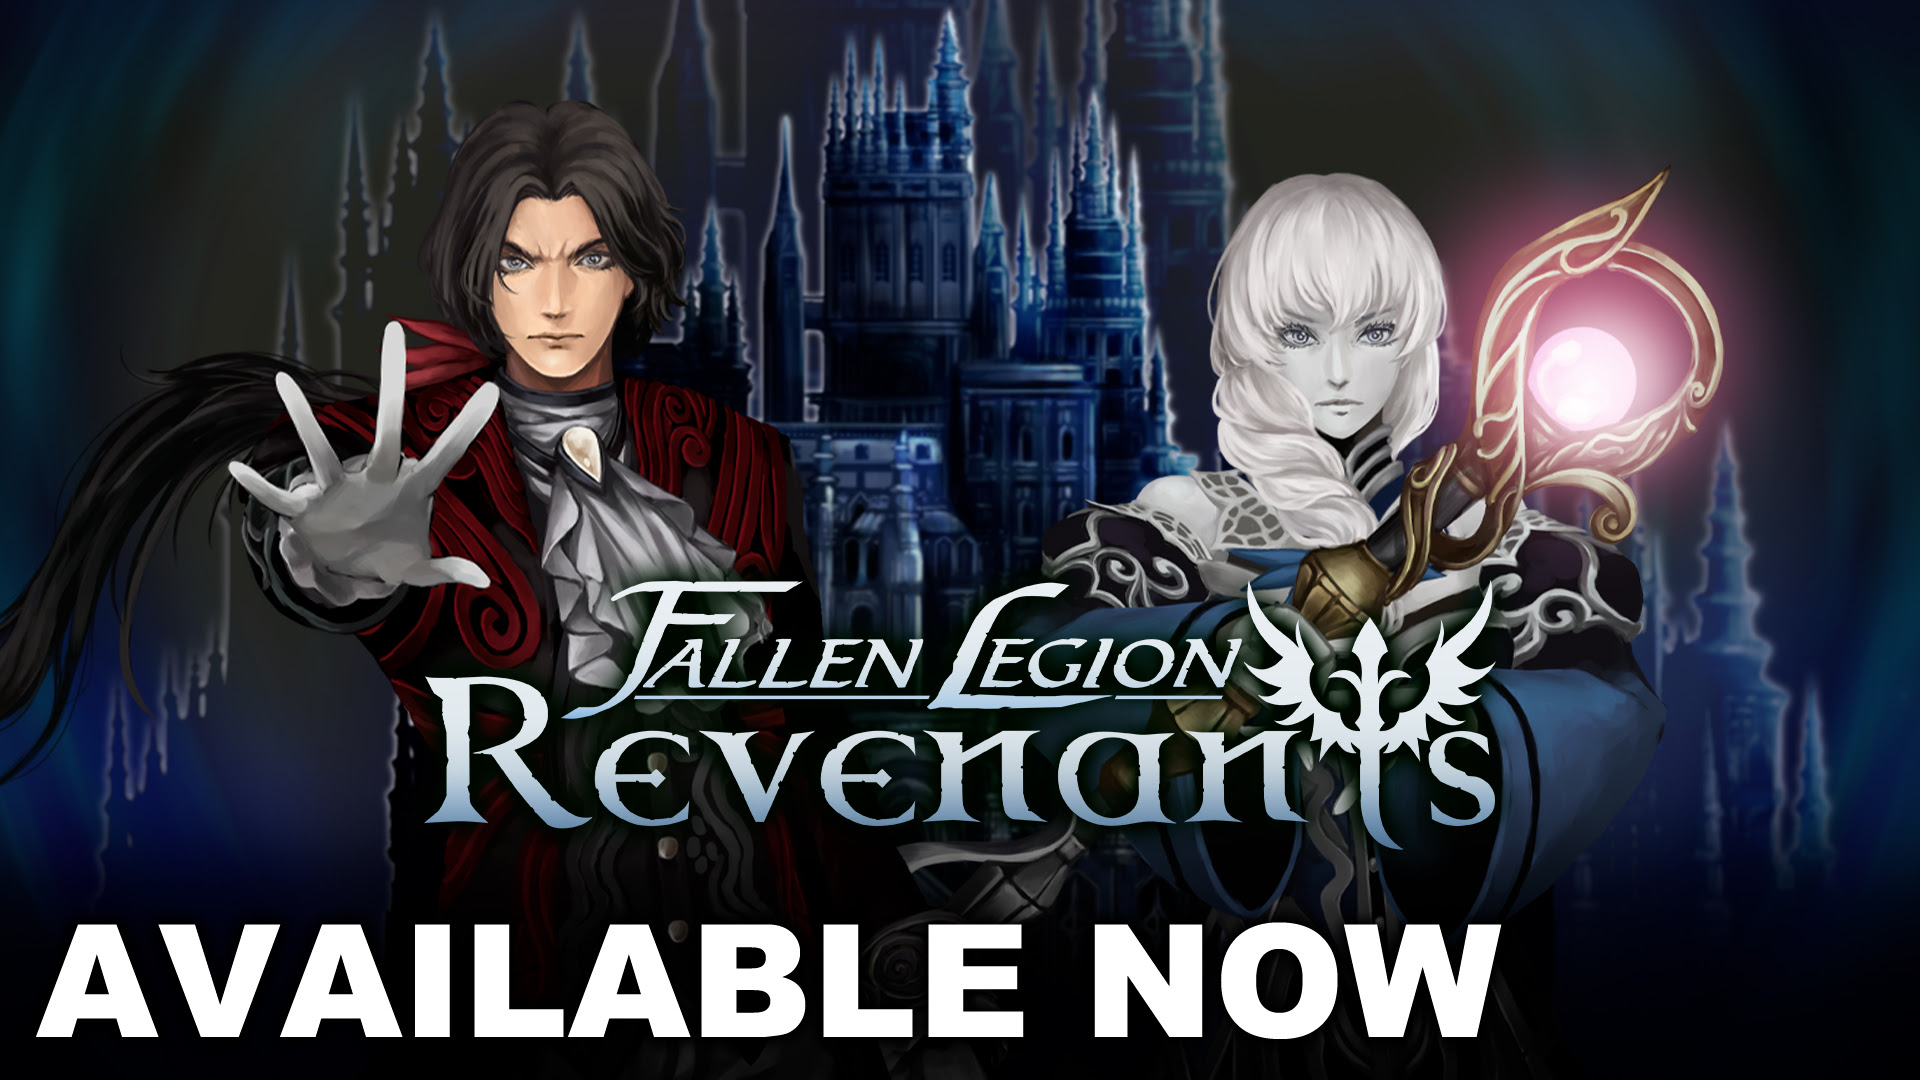 free for ios download Fallen Legion Revenants